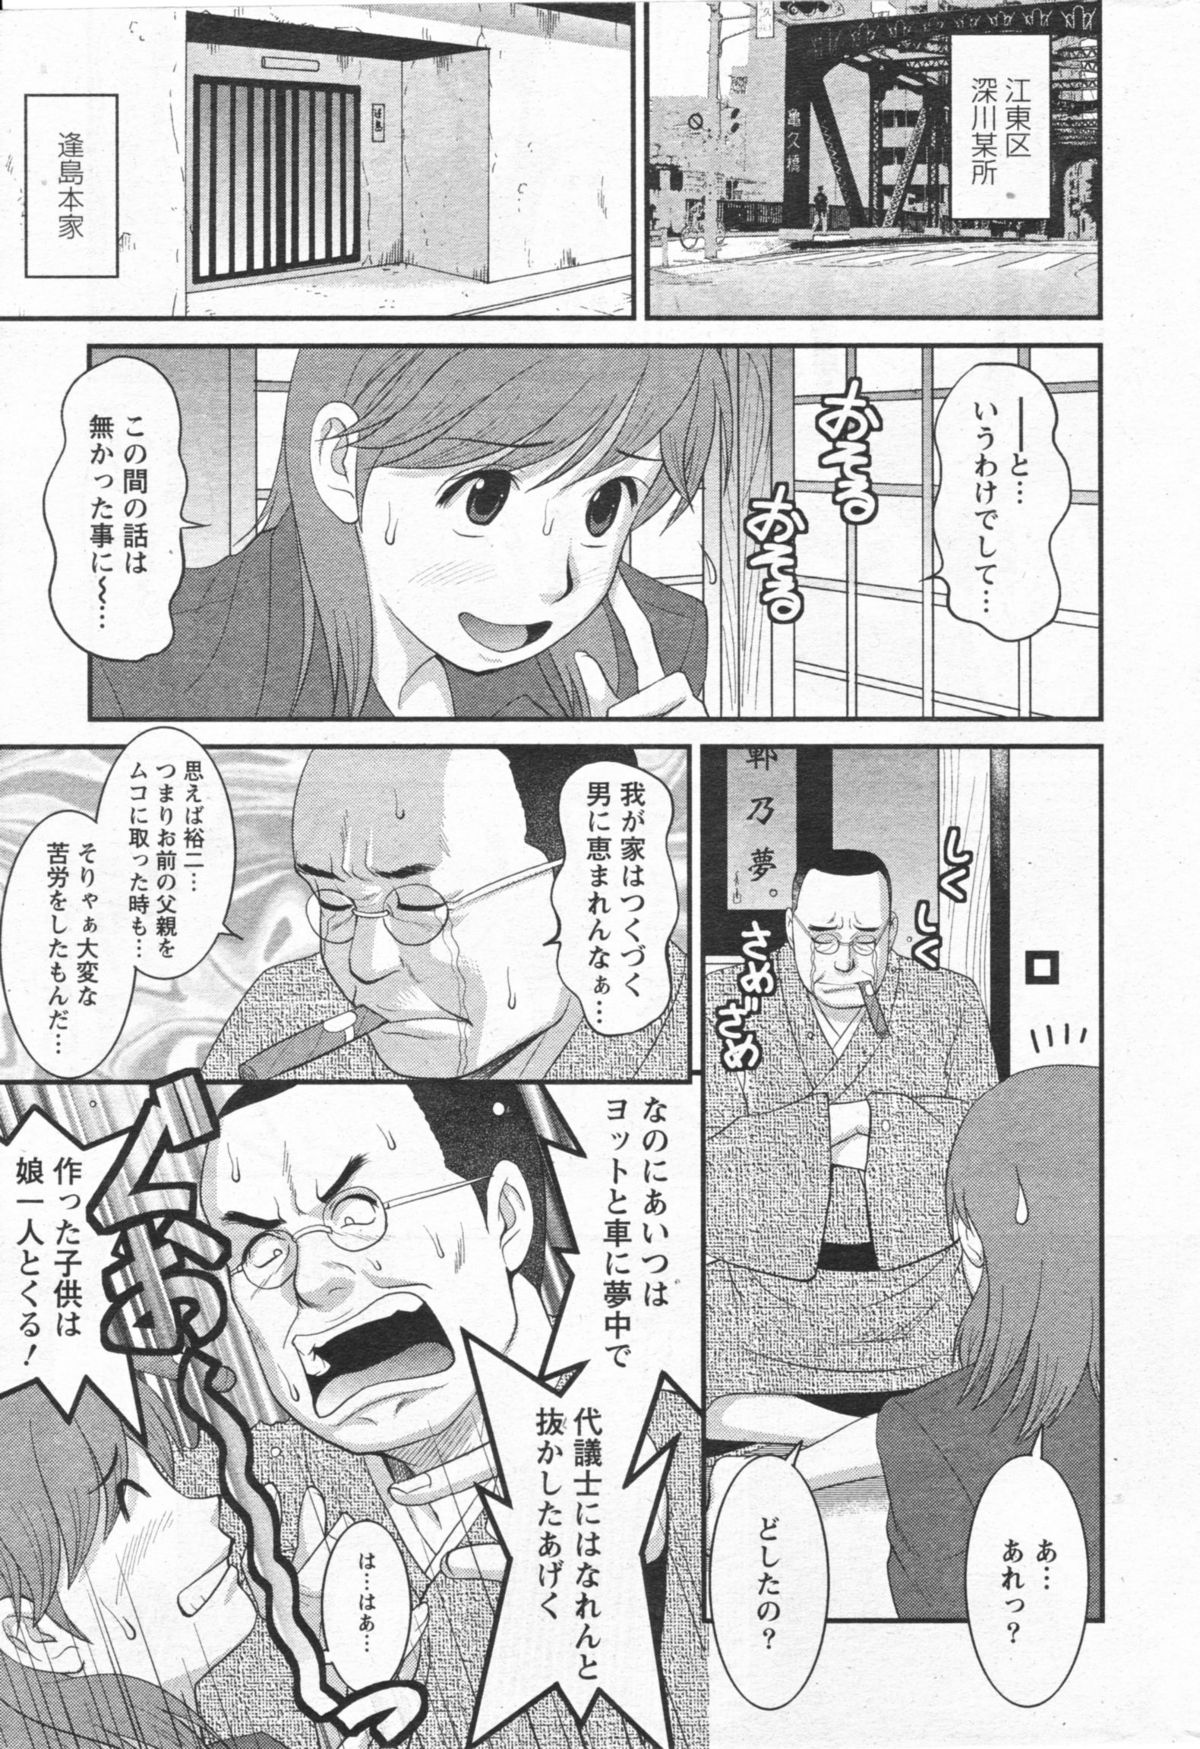 [Saigado] Haken no Muuko San 11 page 6 full